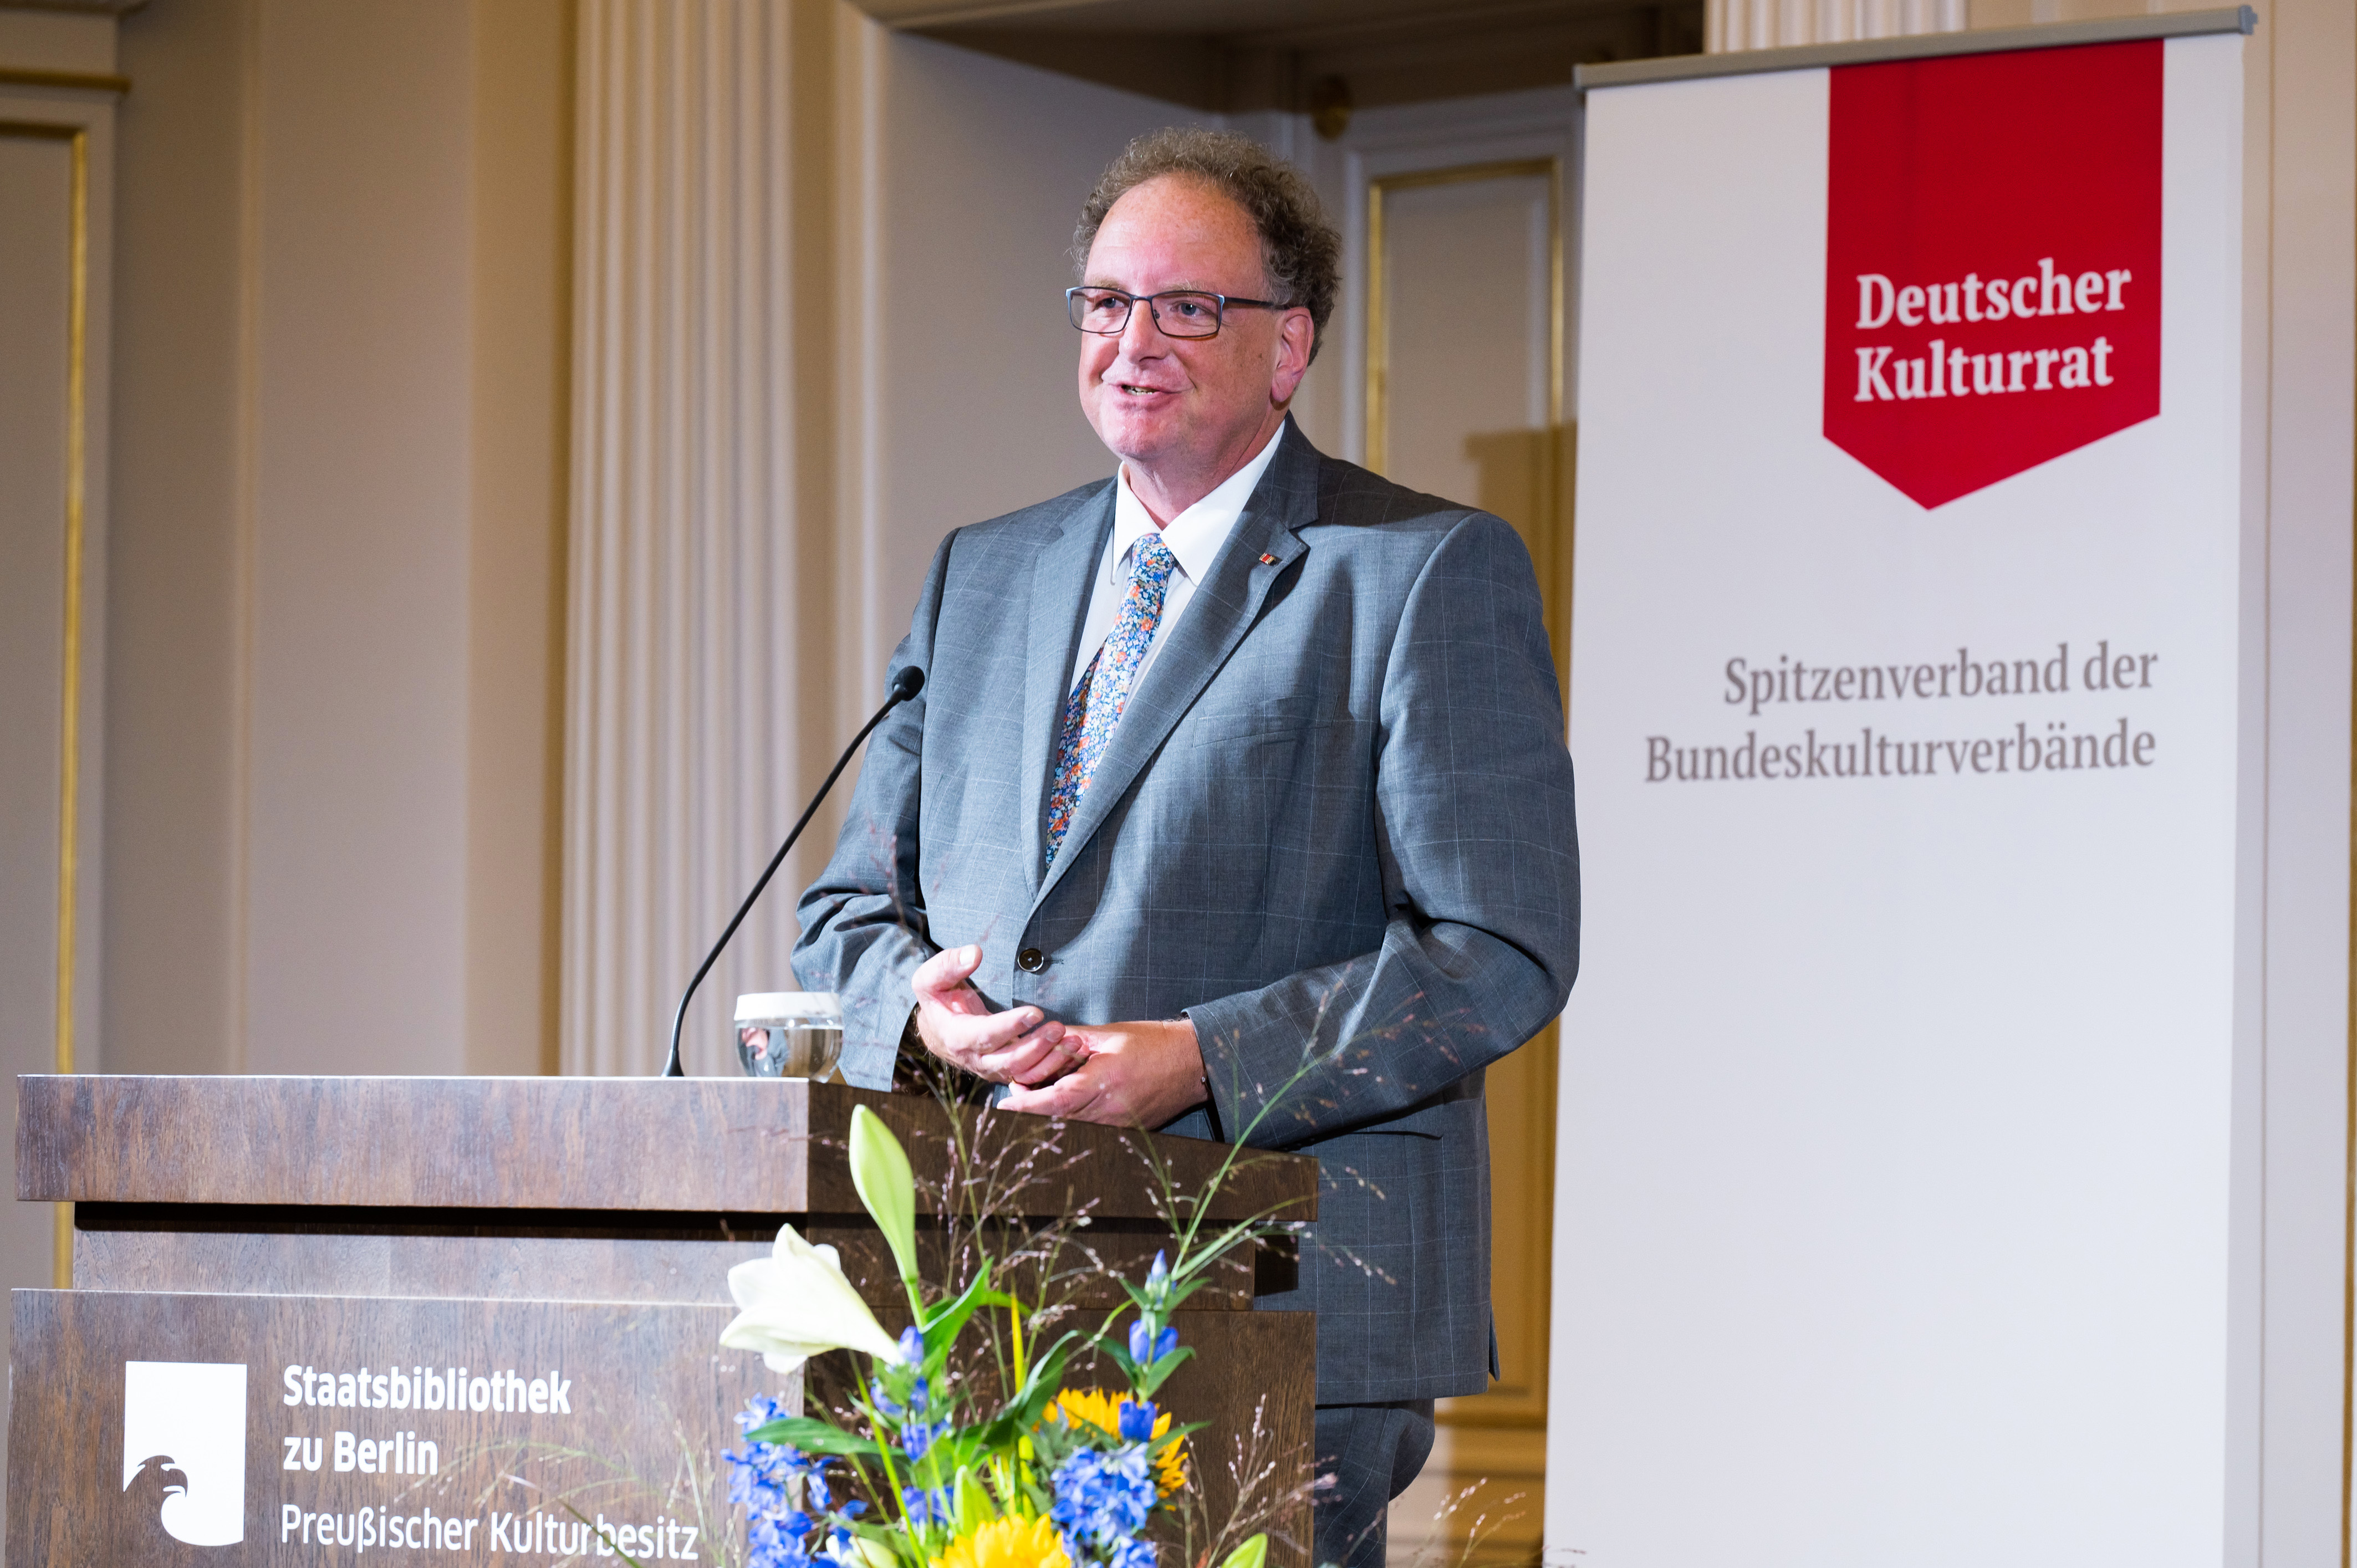 Deutsche Kulturpolitikpreis des Deutschen Kulturrates an Dr. Josef Schuster